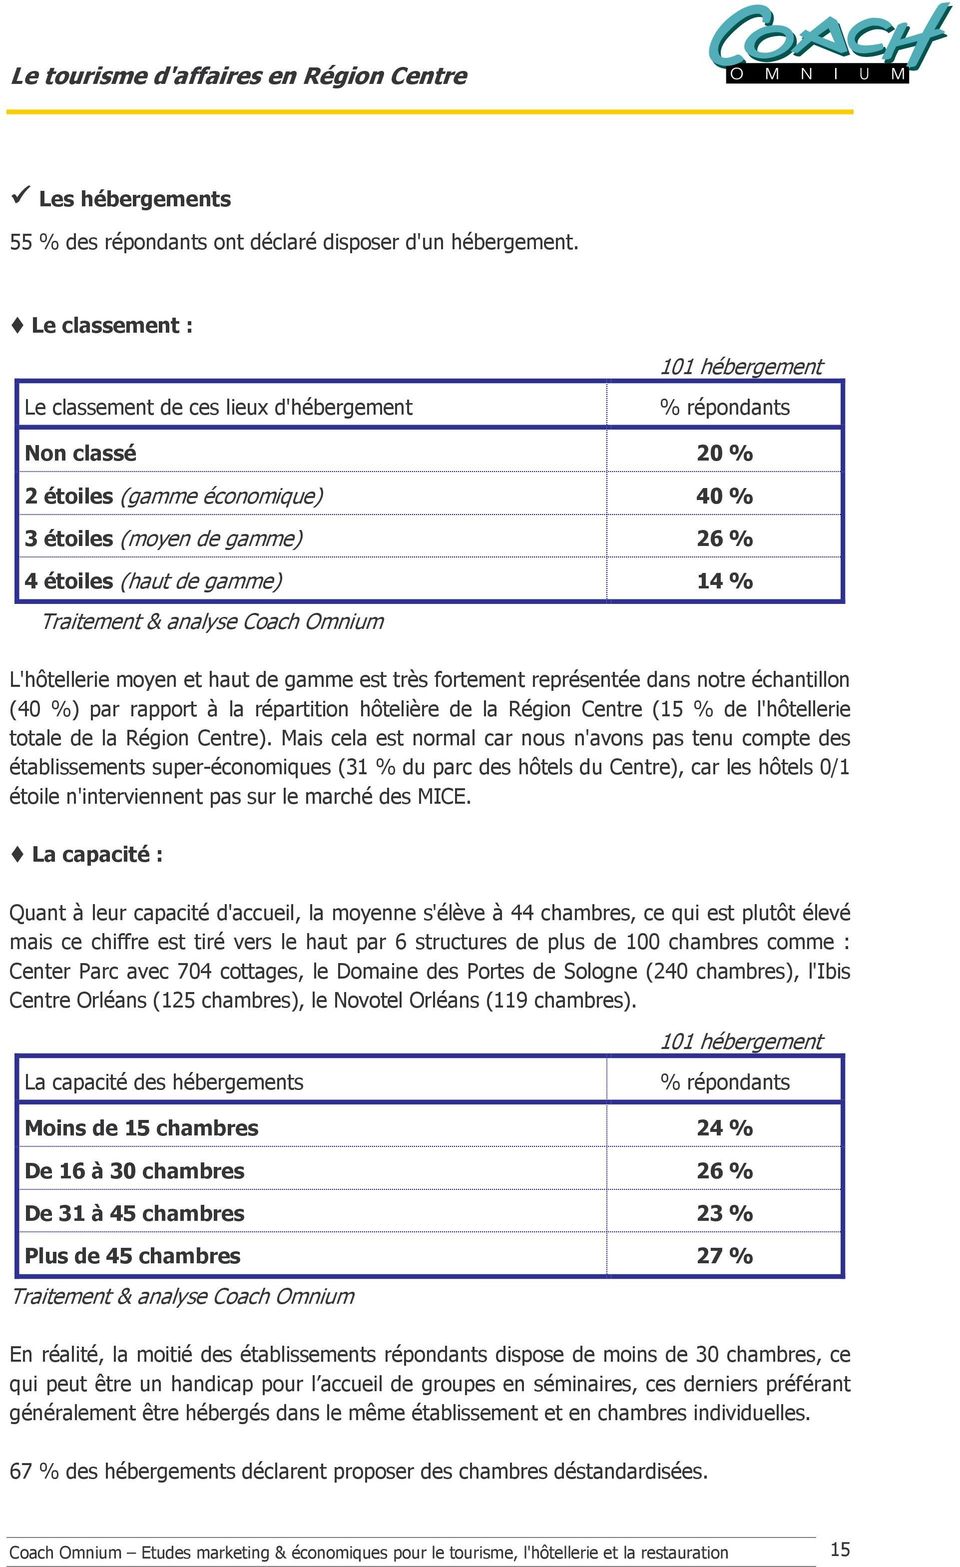 Traitement & analyse Coach Omnium L'hôtellerie moyen et haut de gamme est très fortement représentée dans notre échantillon (40 %) par rapport à la répartition hôtelière de la Région Centre (15 % de